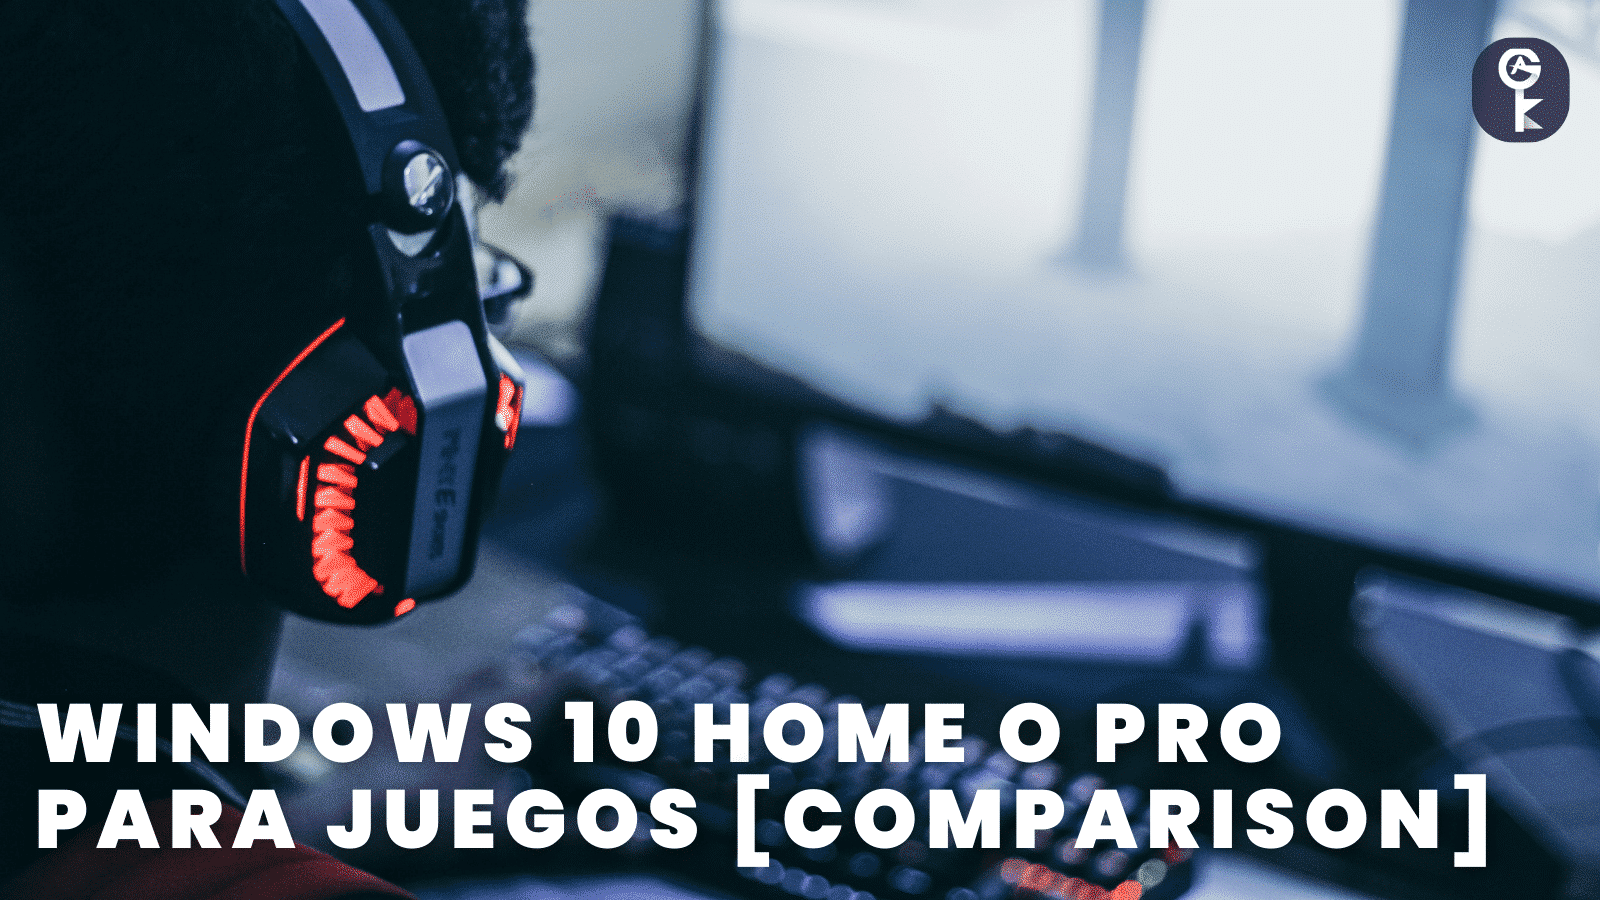 Windows 10 Home o Pro para juegos [Comparison]